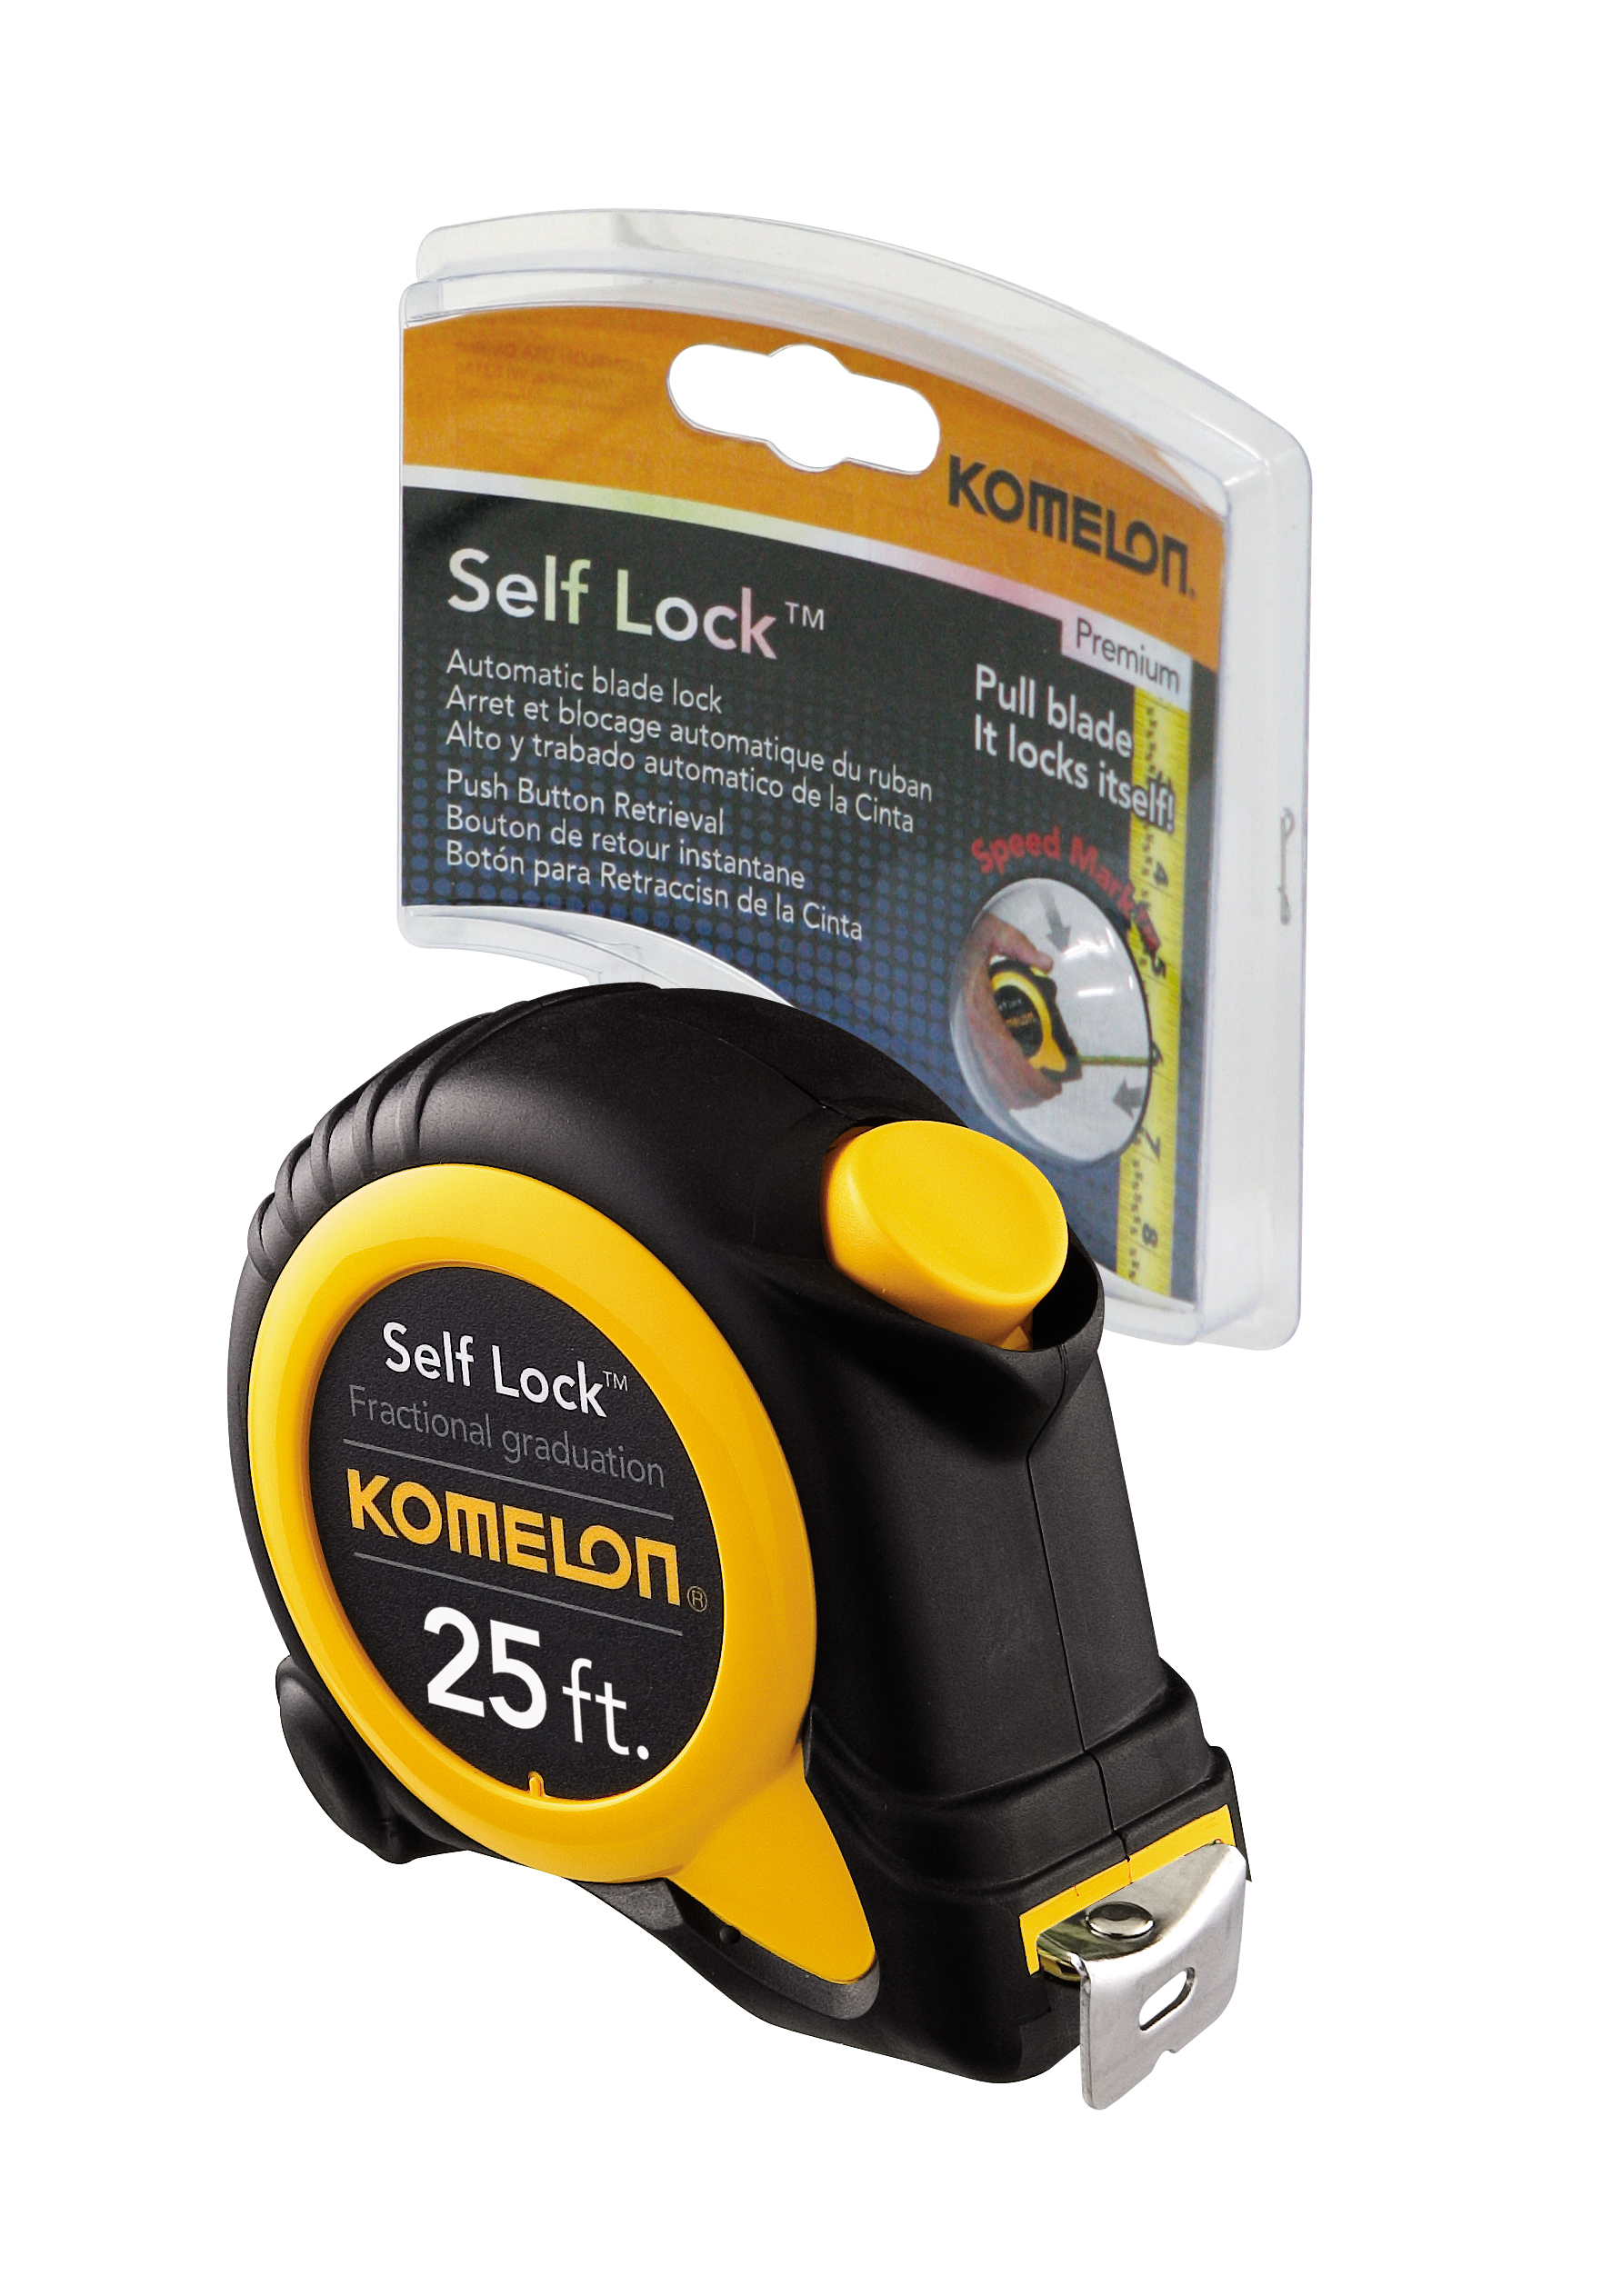 Komelon 25ft Speedmark Self Lock Tape Measure - image 2 of 2